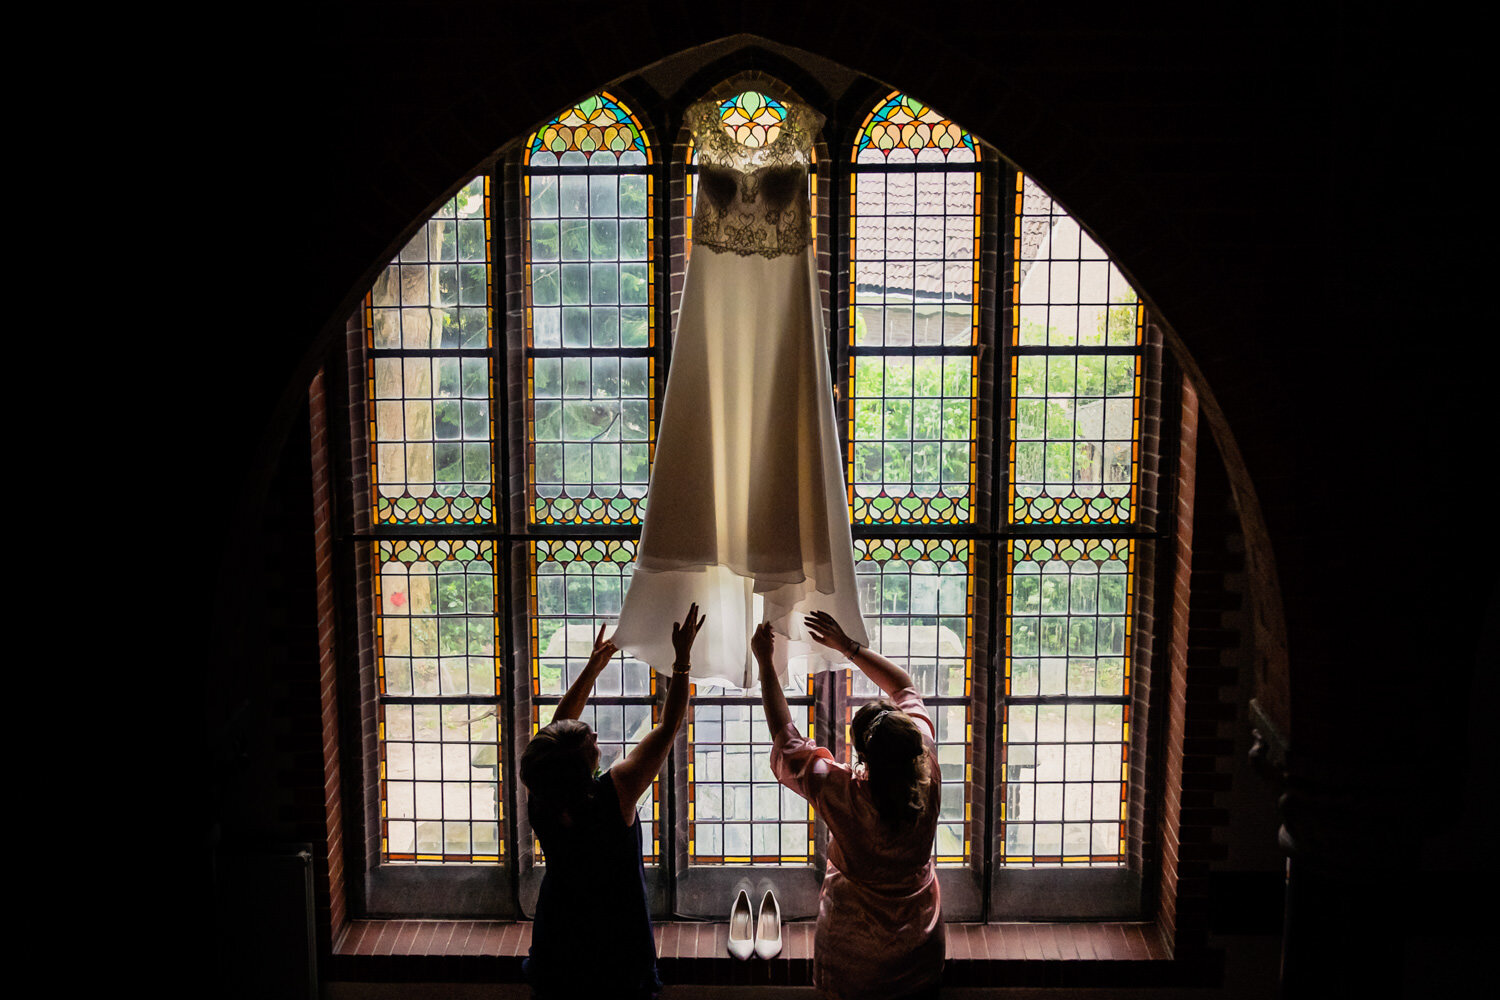 Op deze foto hangt je trouwjurk in één van de prachtige glas in lood ramen hangen. Dat geeft echt een magische sfeer. 